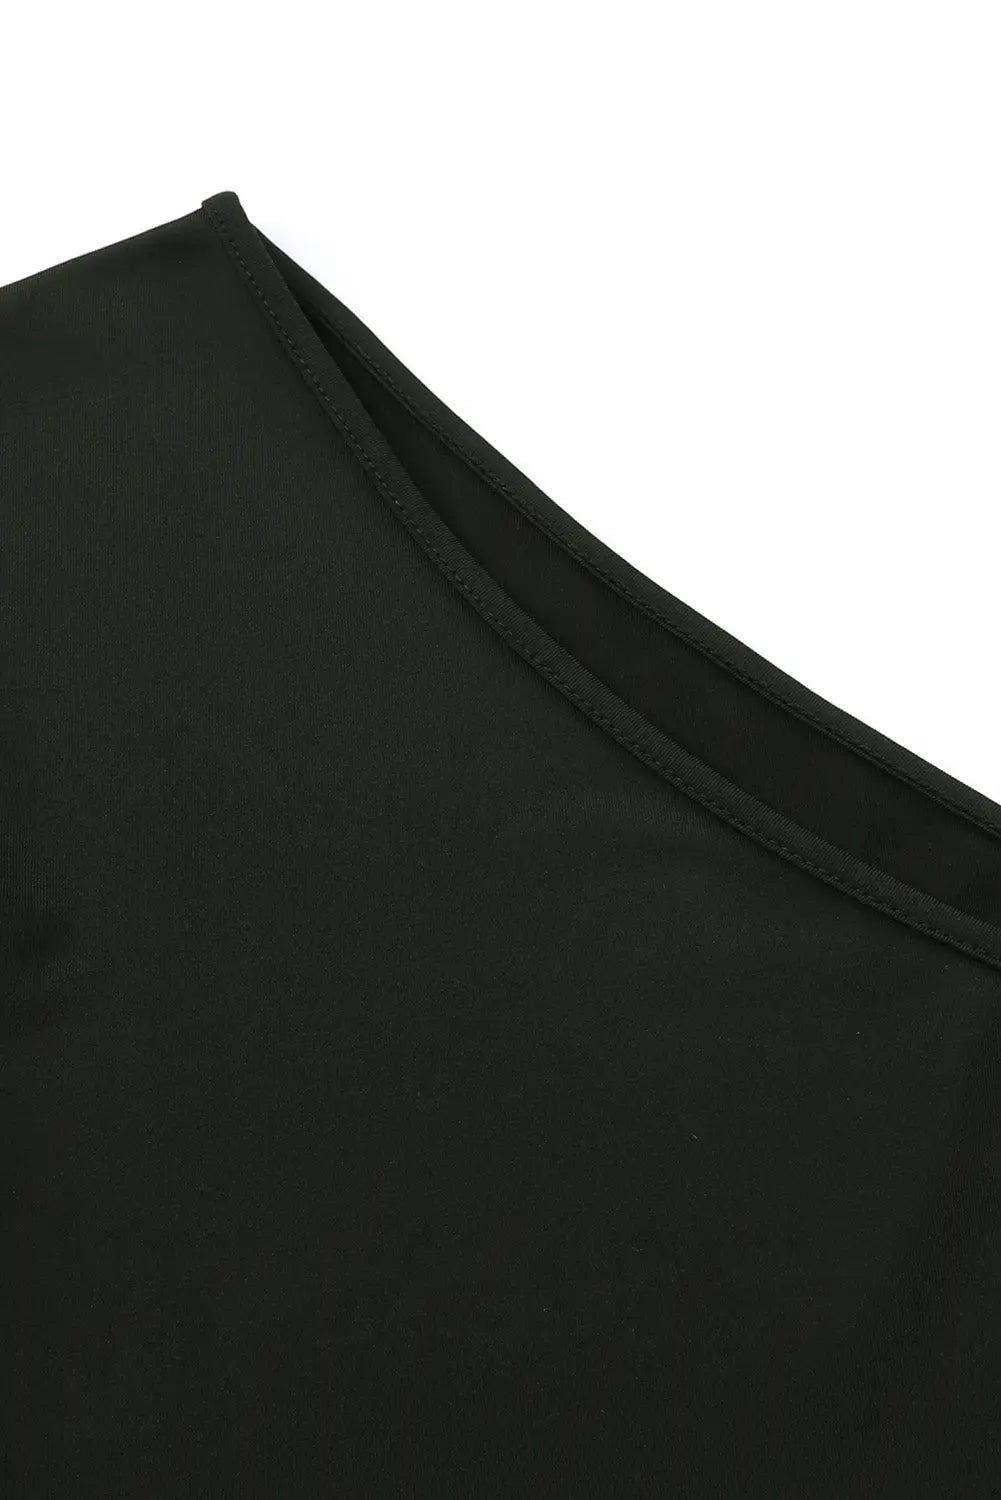 Black one shoulder fringed long sleeve bodysuit - bodysuits